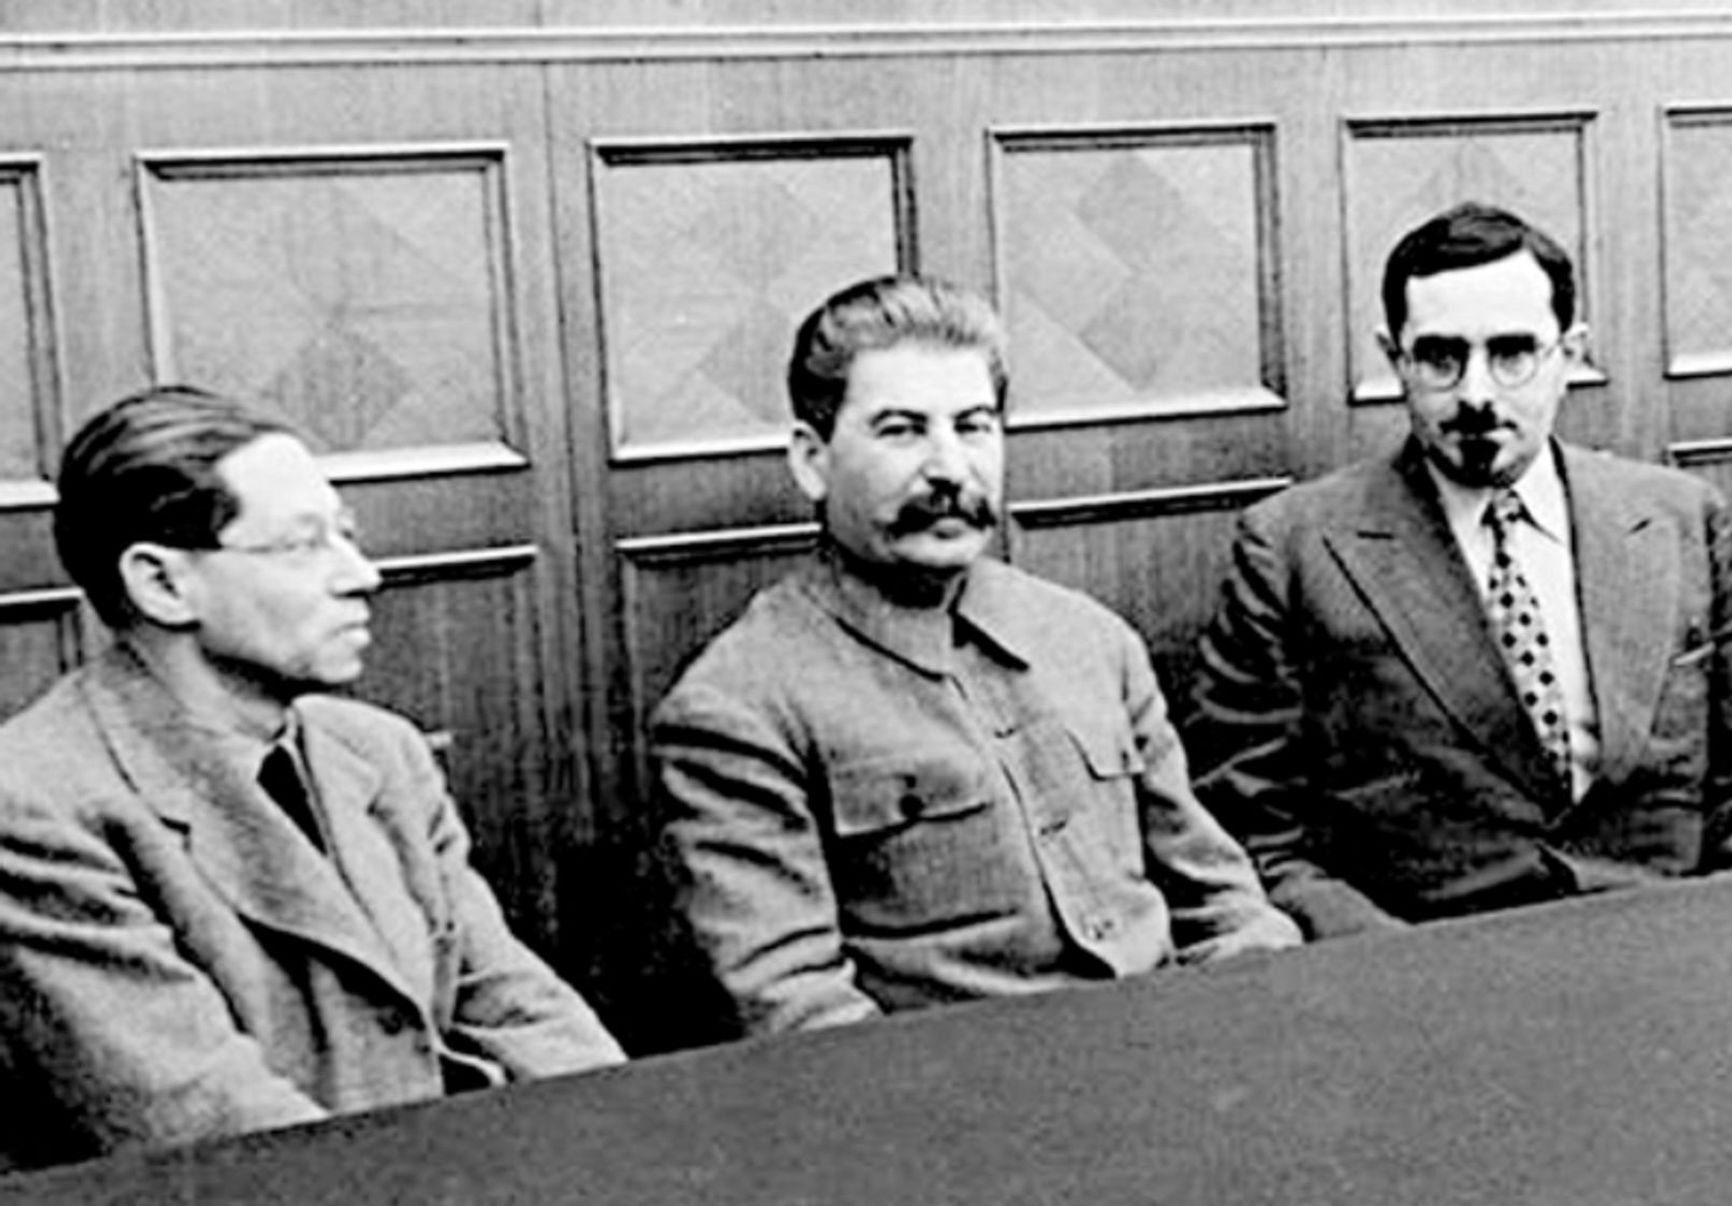 Lyon Feuchtwanger, Joseph Stalin and Boris Tal. January 8, 1937